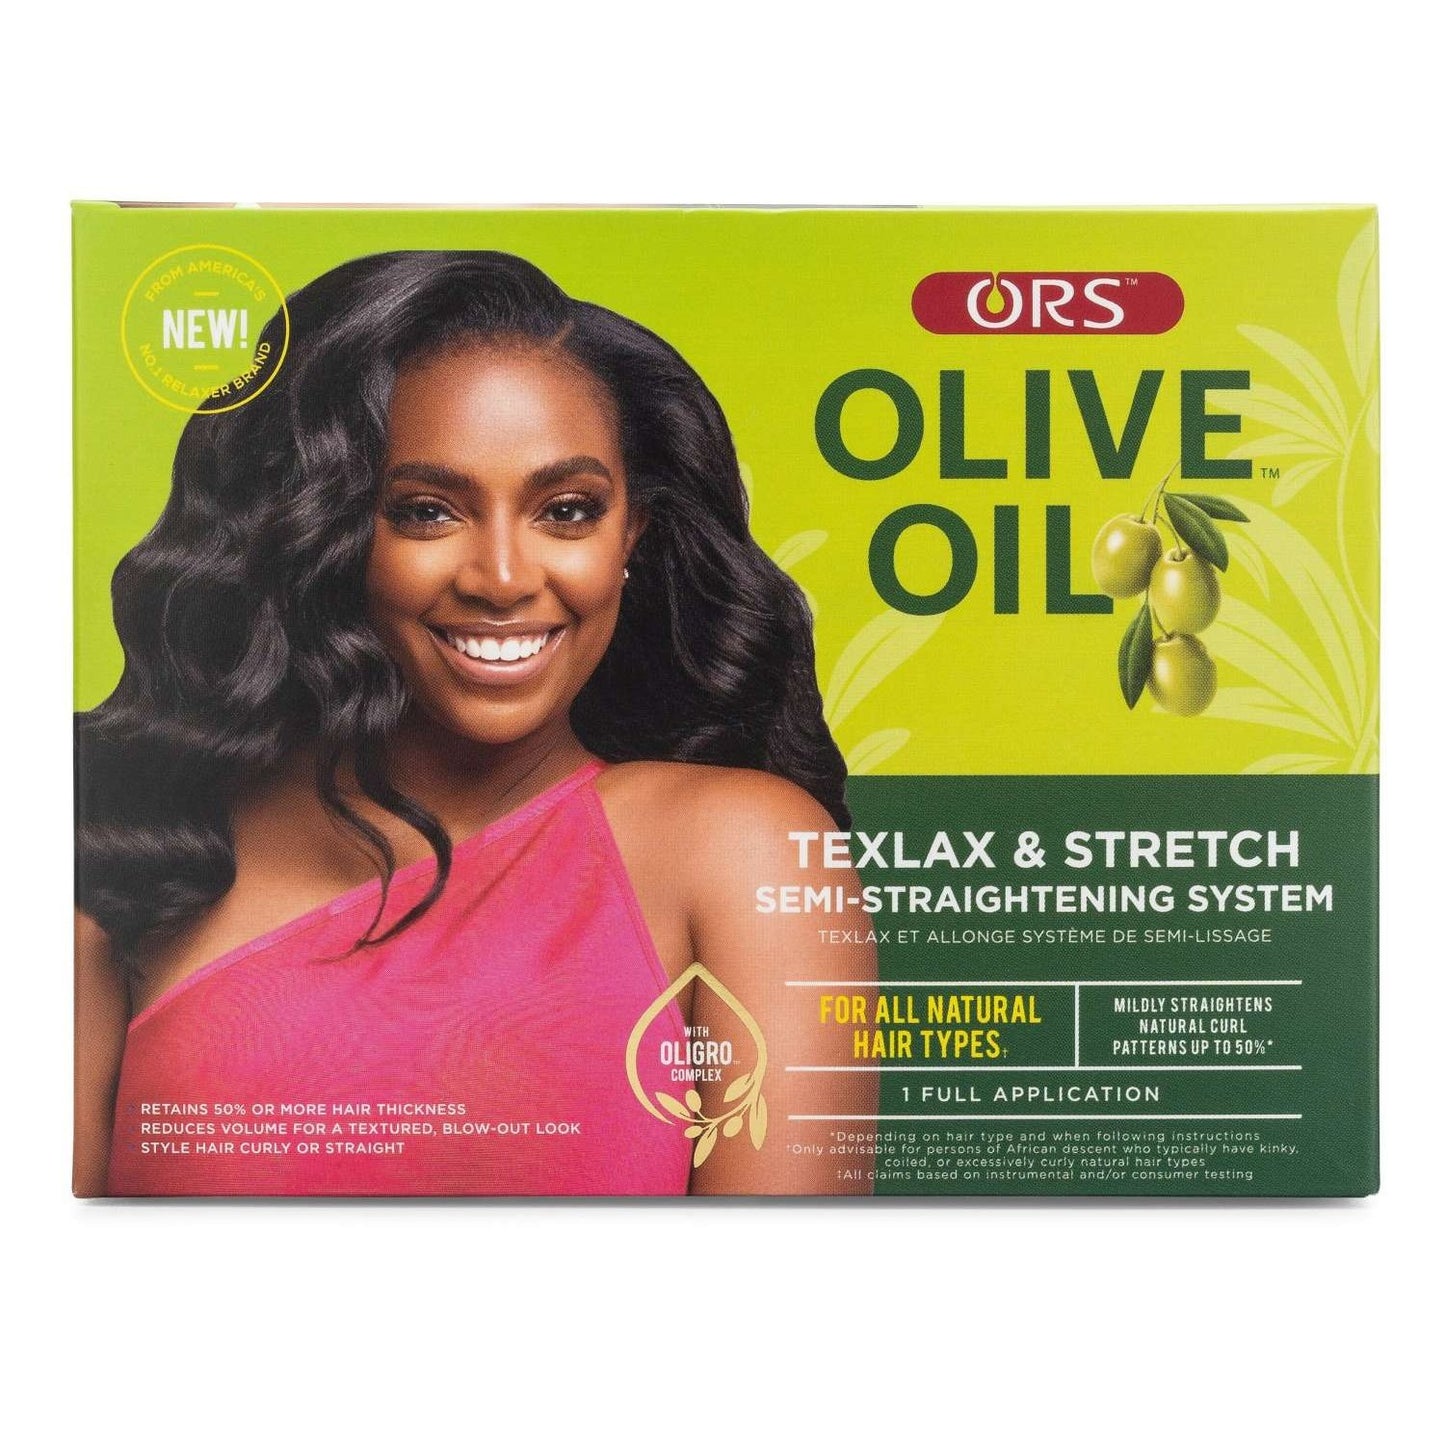 Ors Olive Oil Texlax  Stretch Semi-Straightening System